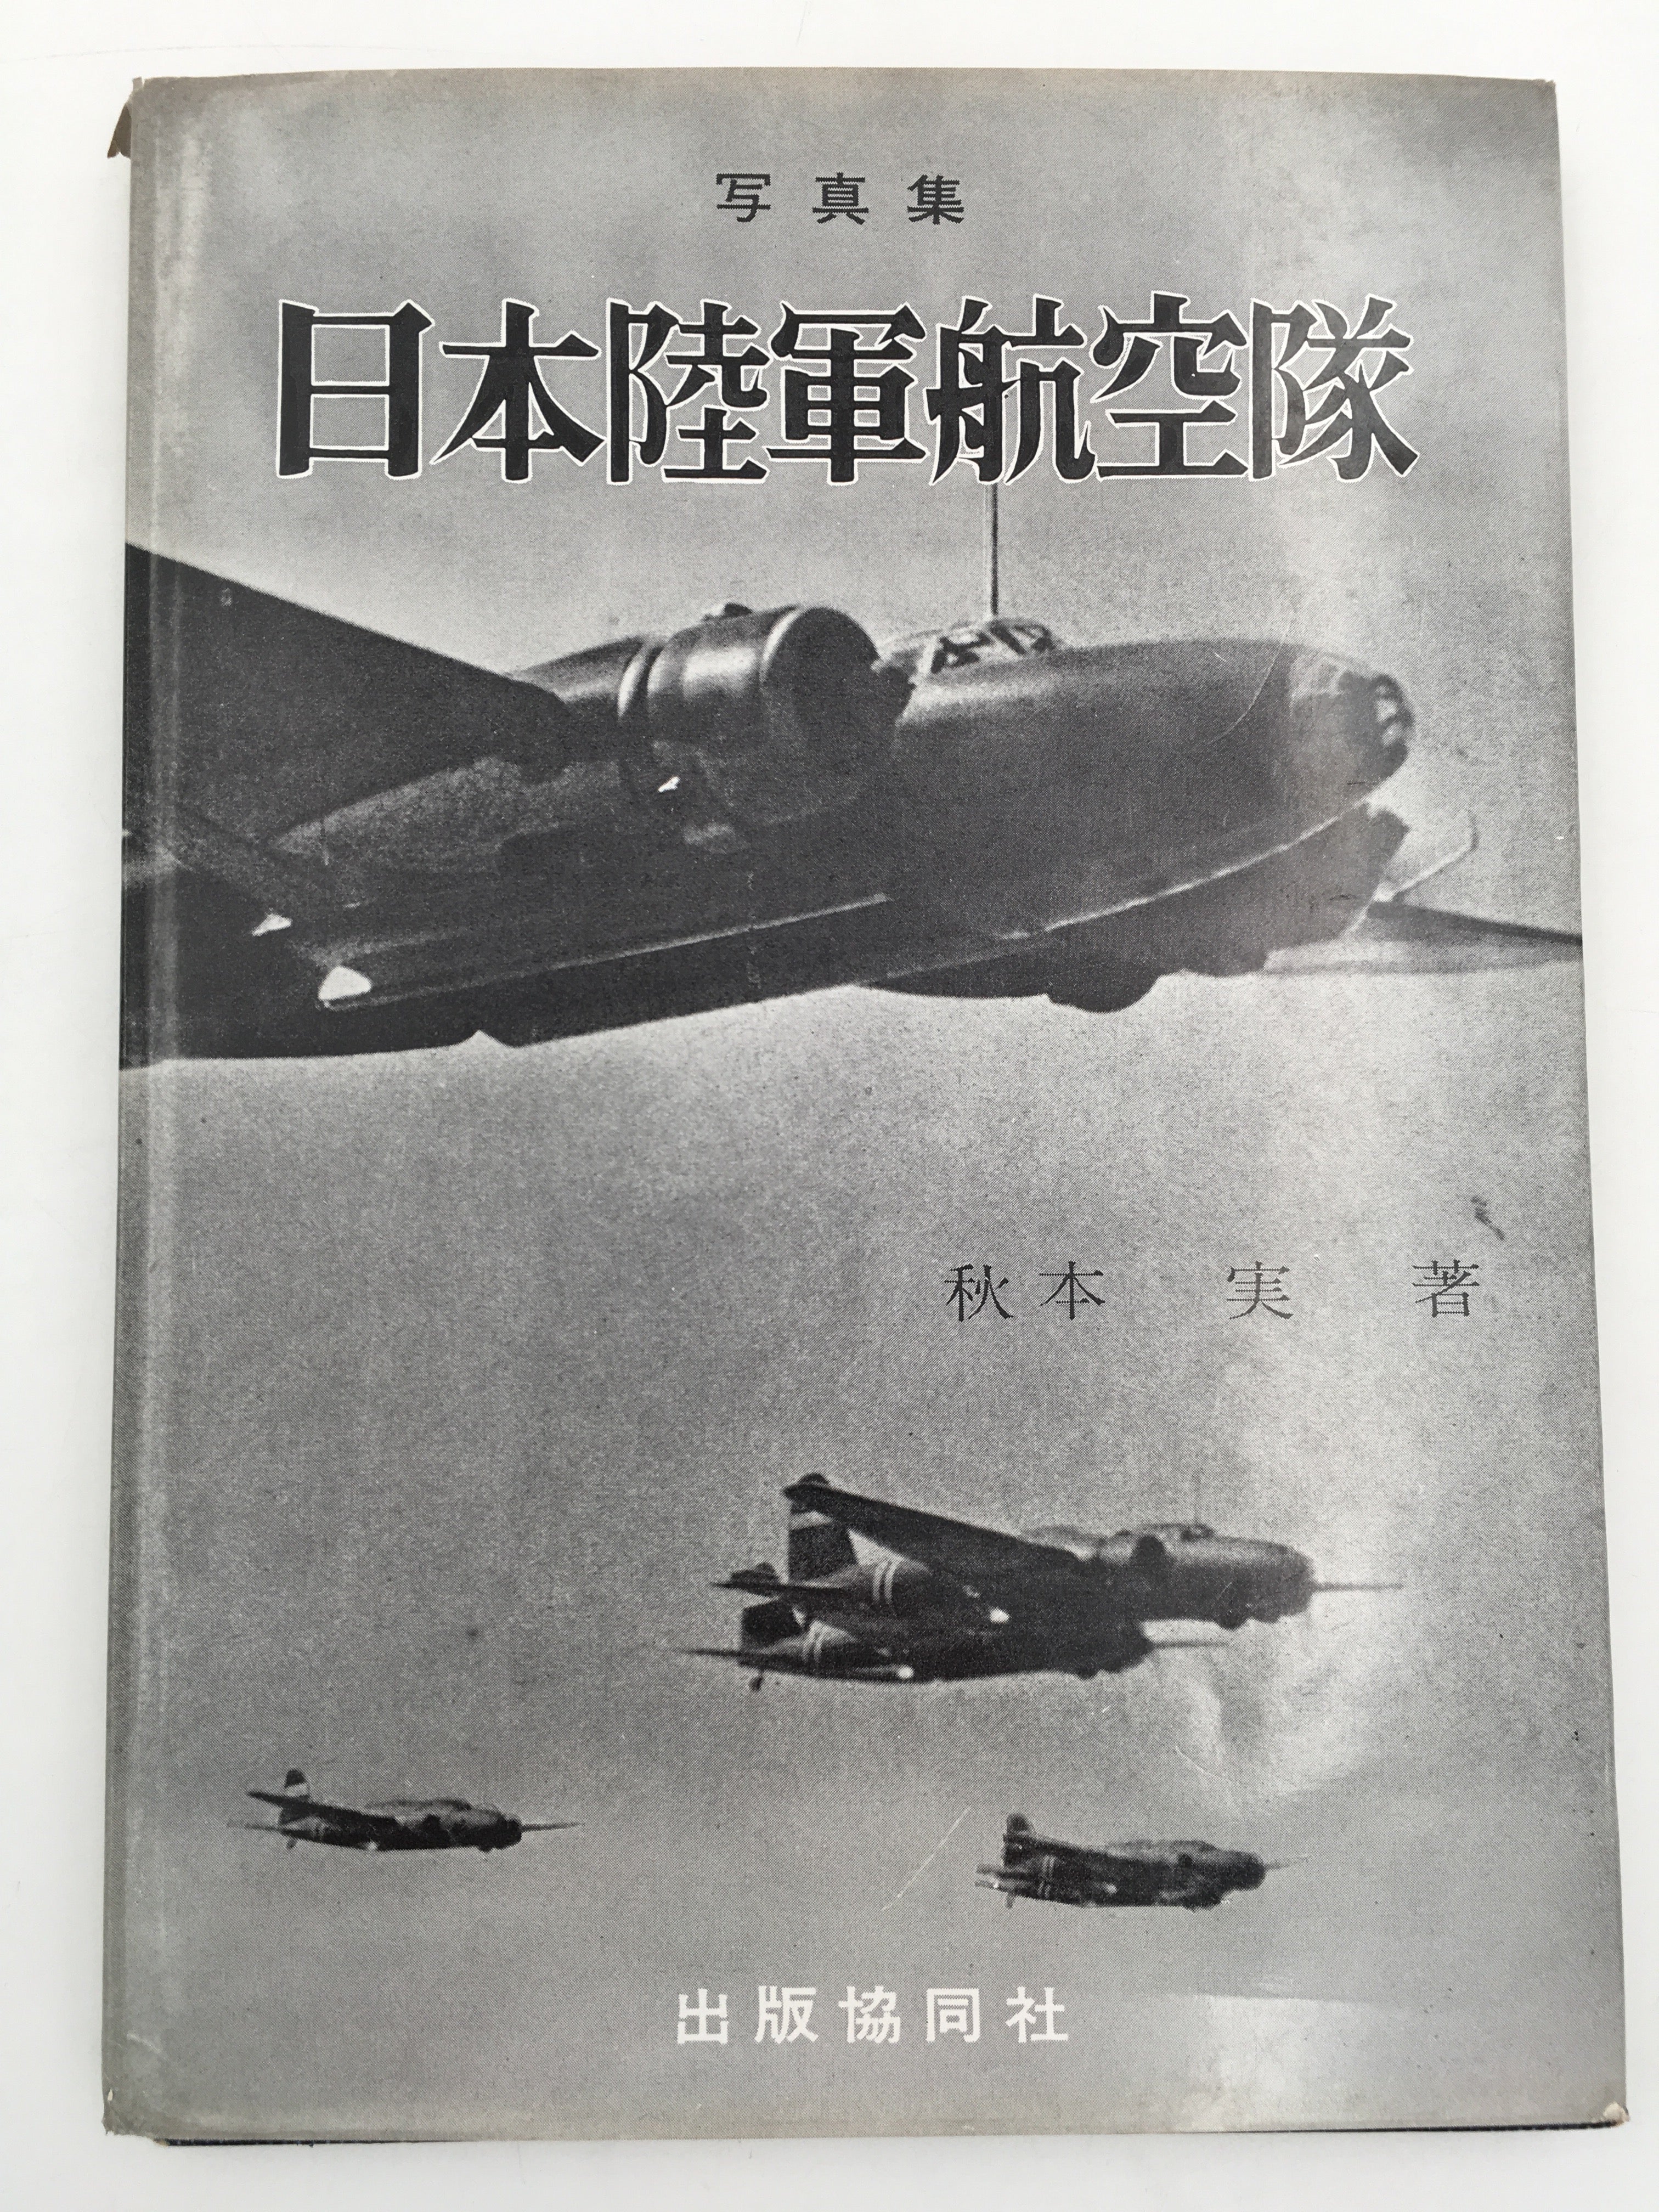 写真集・日本陸軍航空隊 – aviation.brussels